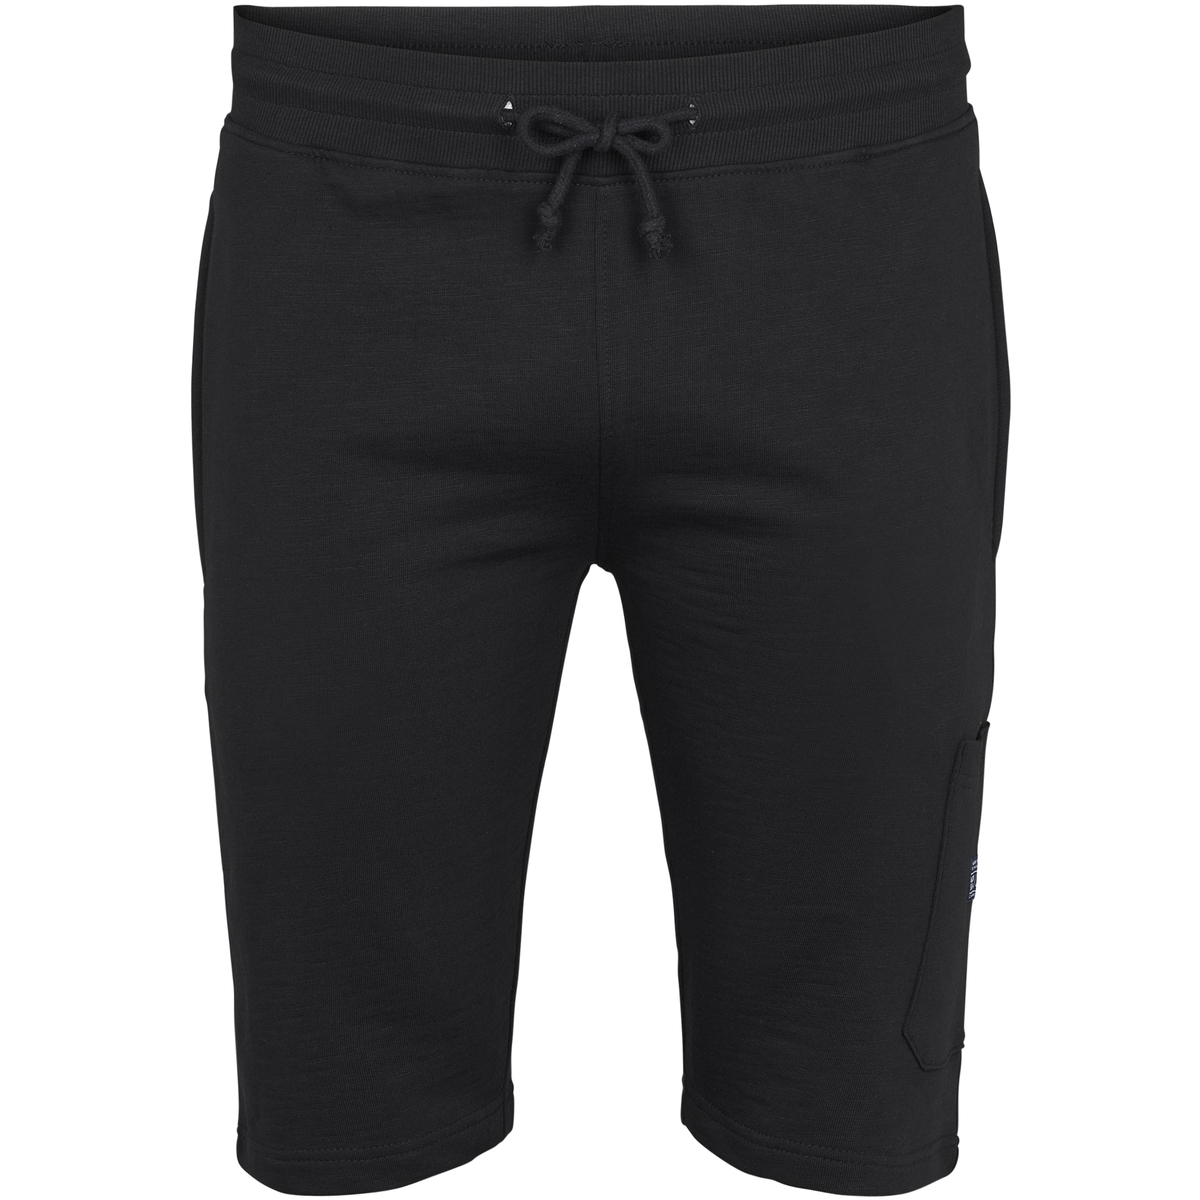 Vêtements Homme Shorts / Bermudas North 56°4 Short coton Noir